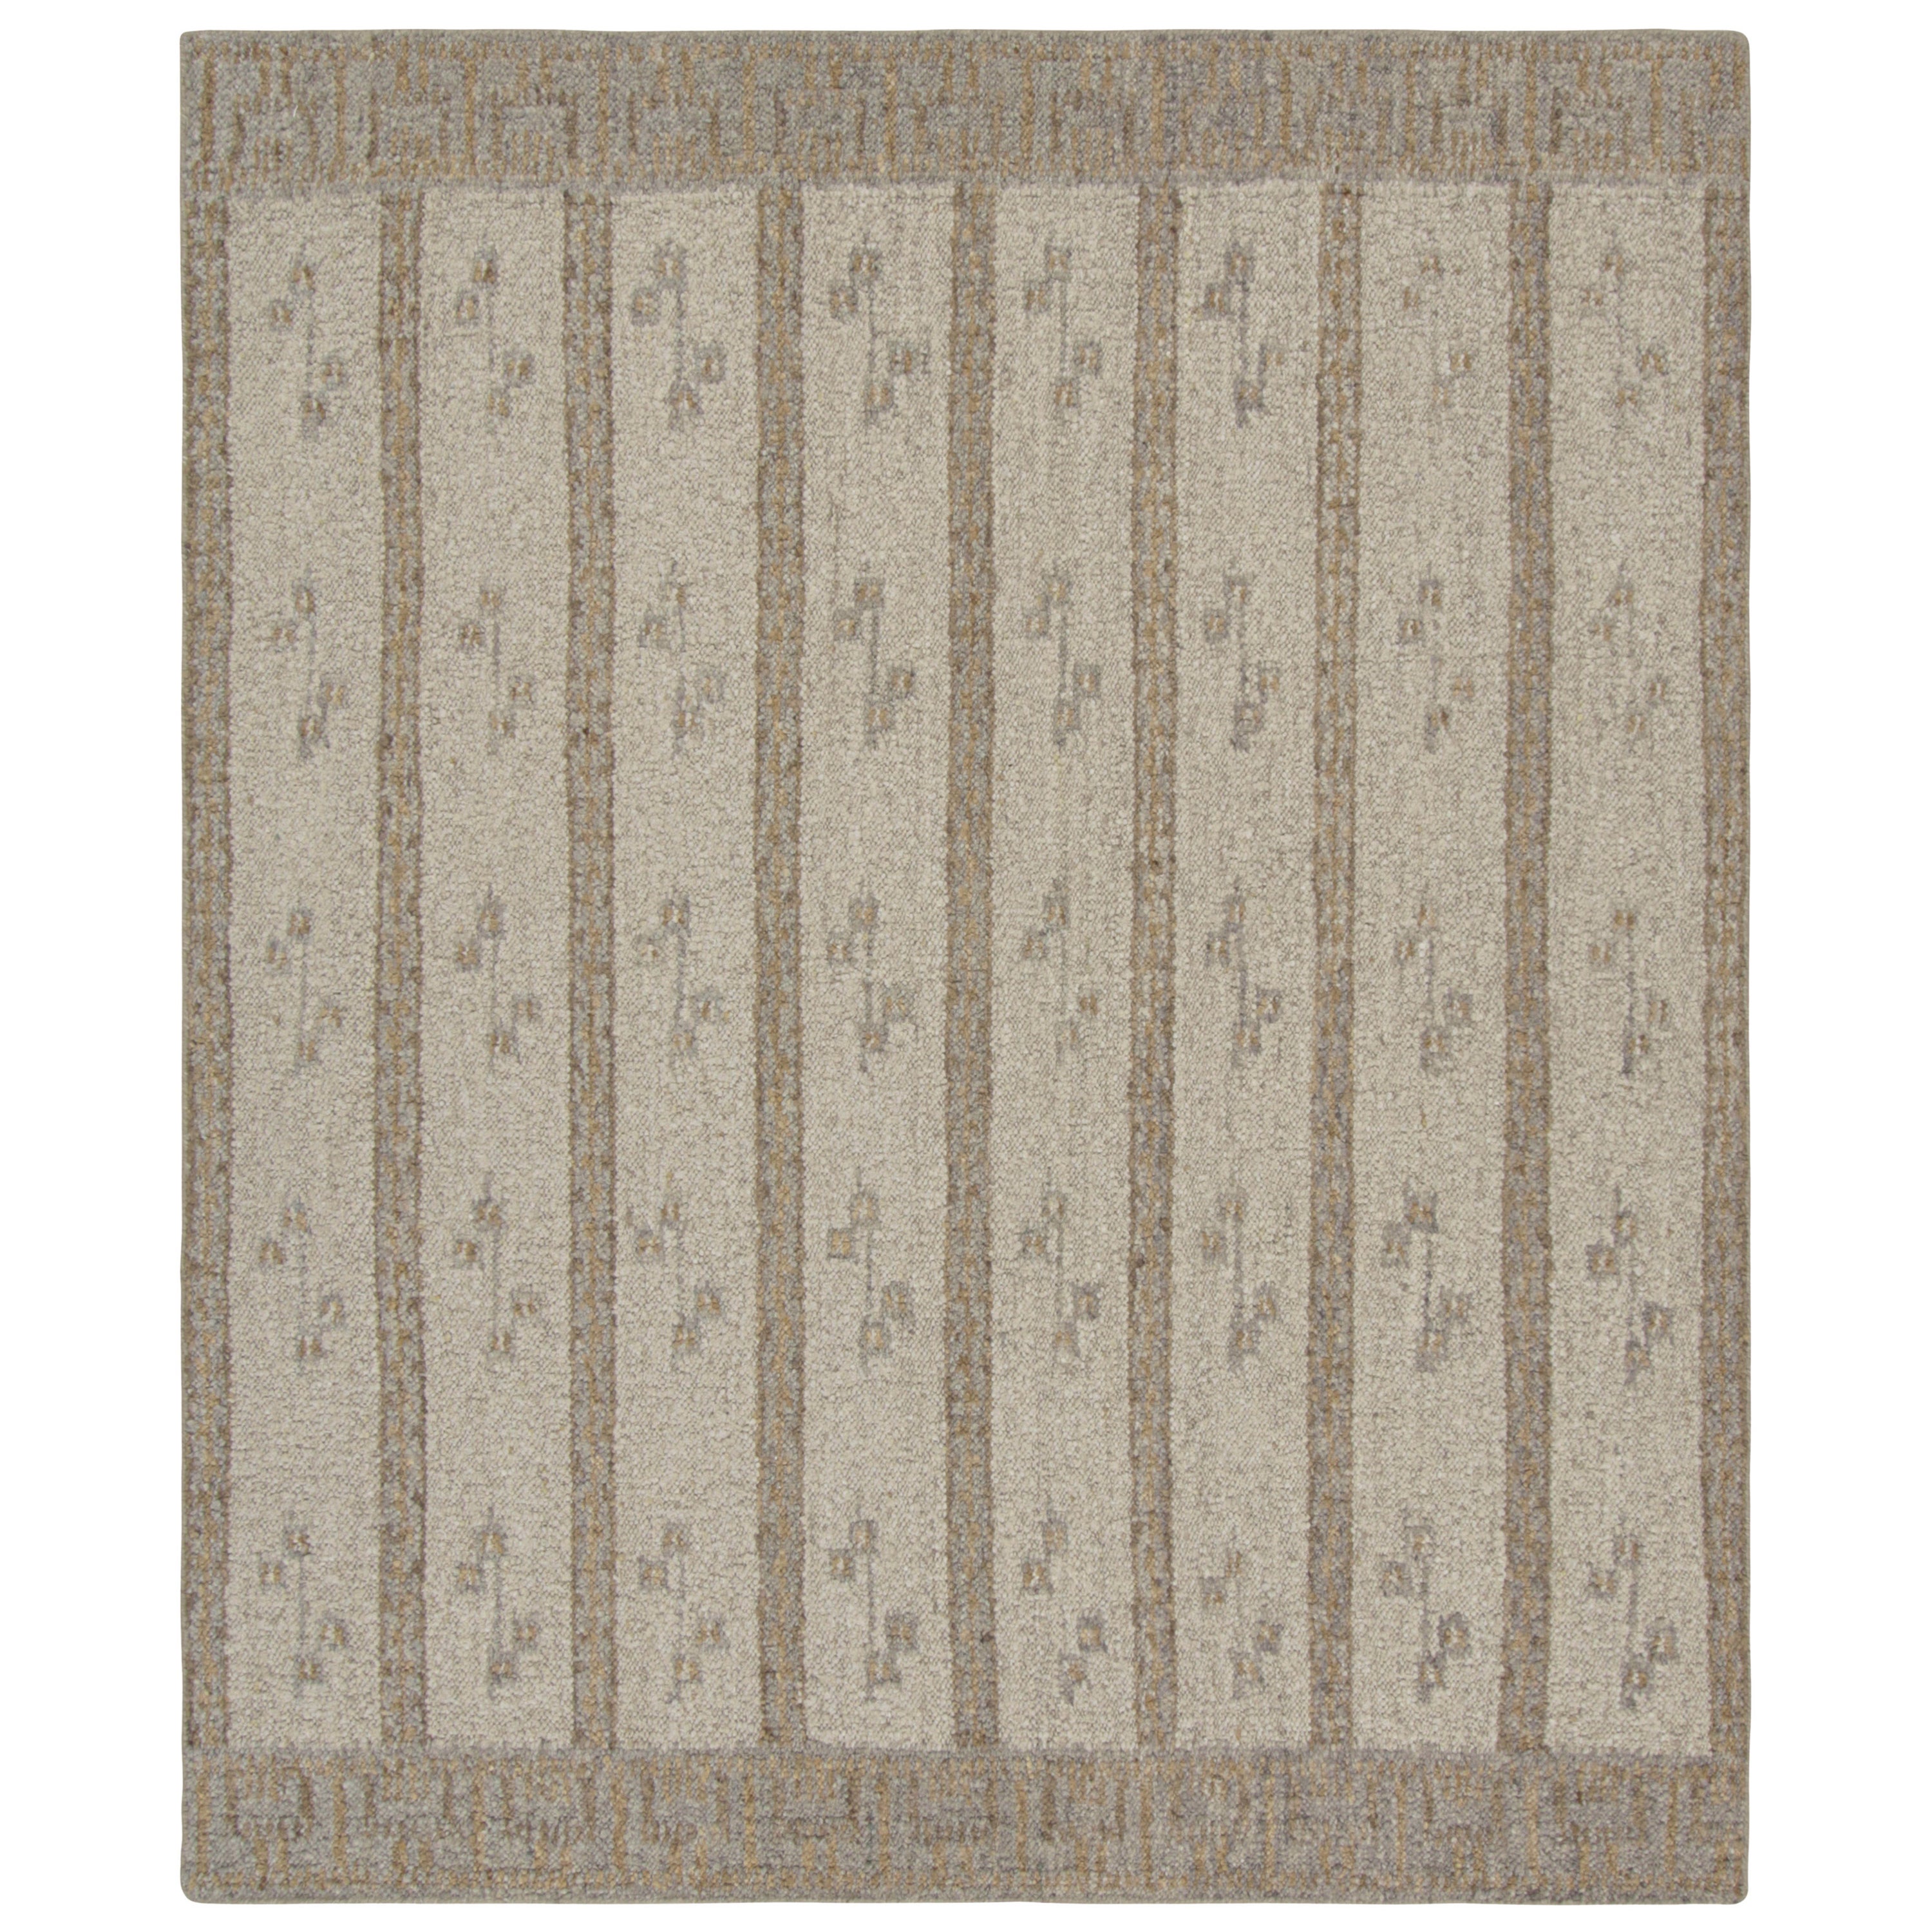 Rug & Kilim's Teppich im skandinavischen Stil mit weißen und beige-braunen Streifen und Geometrien